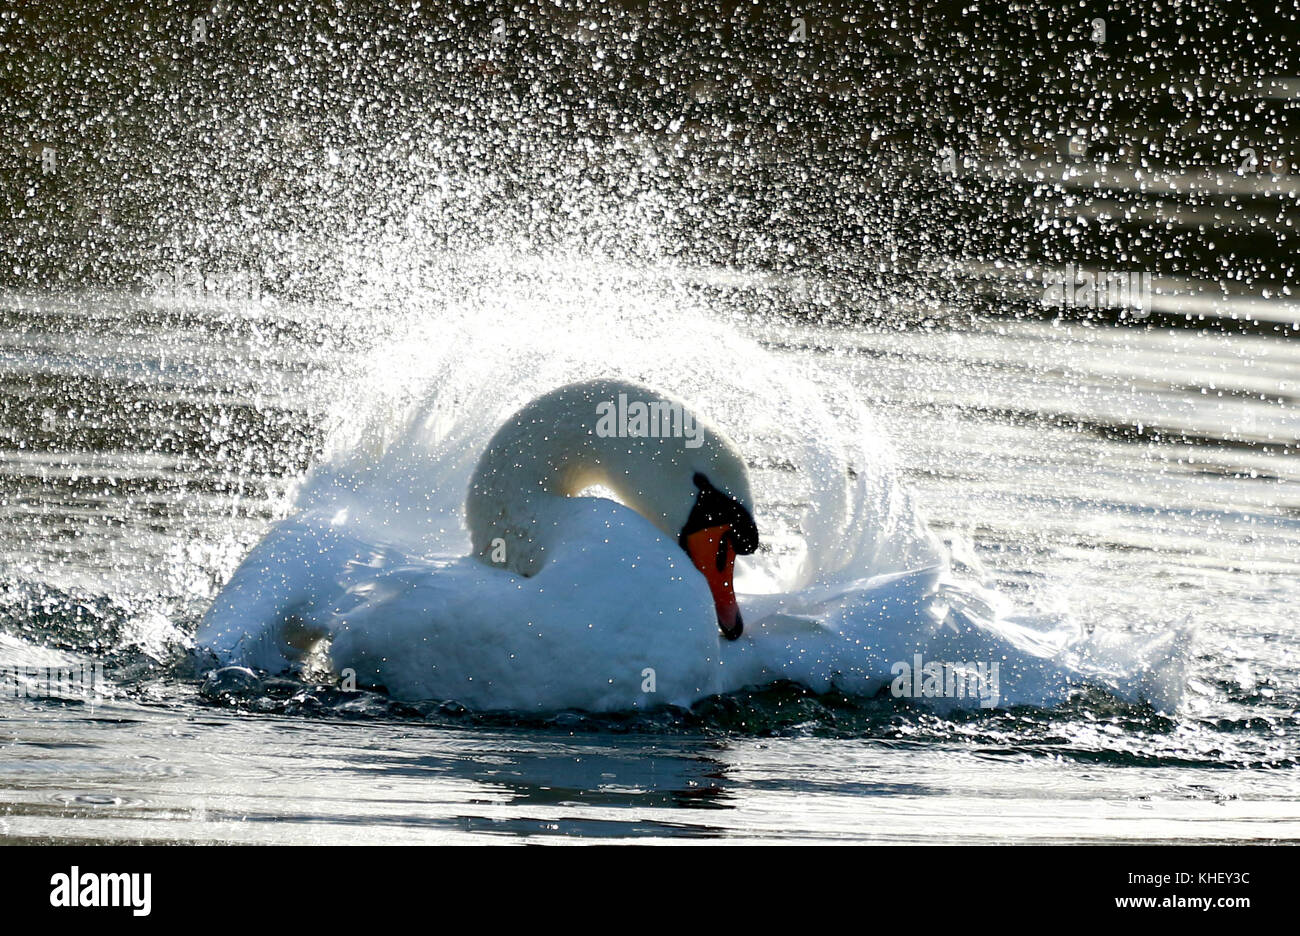 Peterborough, Großbritannien. 16 Nov, 2017. de Wetter. Eine Mute swan Sprays überall Wasser, da es ein Waschen bei Nene Park, Peterborough, Cambridgeshire, am 16. November 2017. uk Wetter. Credit: Paul Marriott/alamy leben Nachrichten Stockfoto